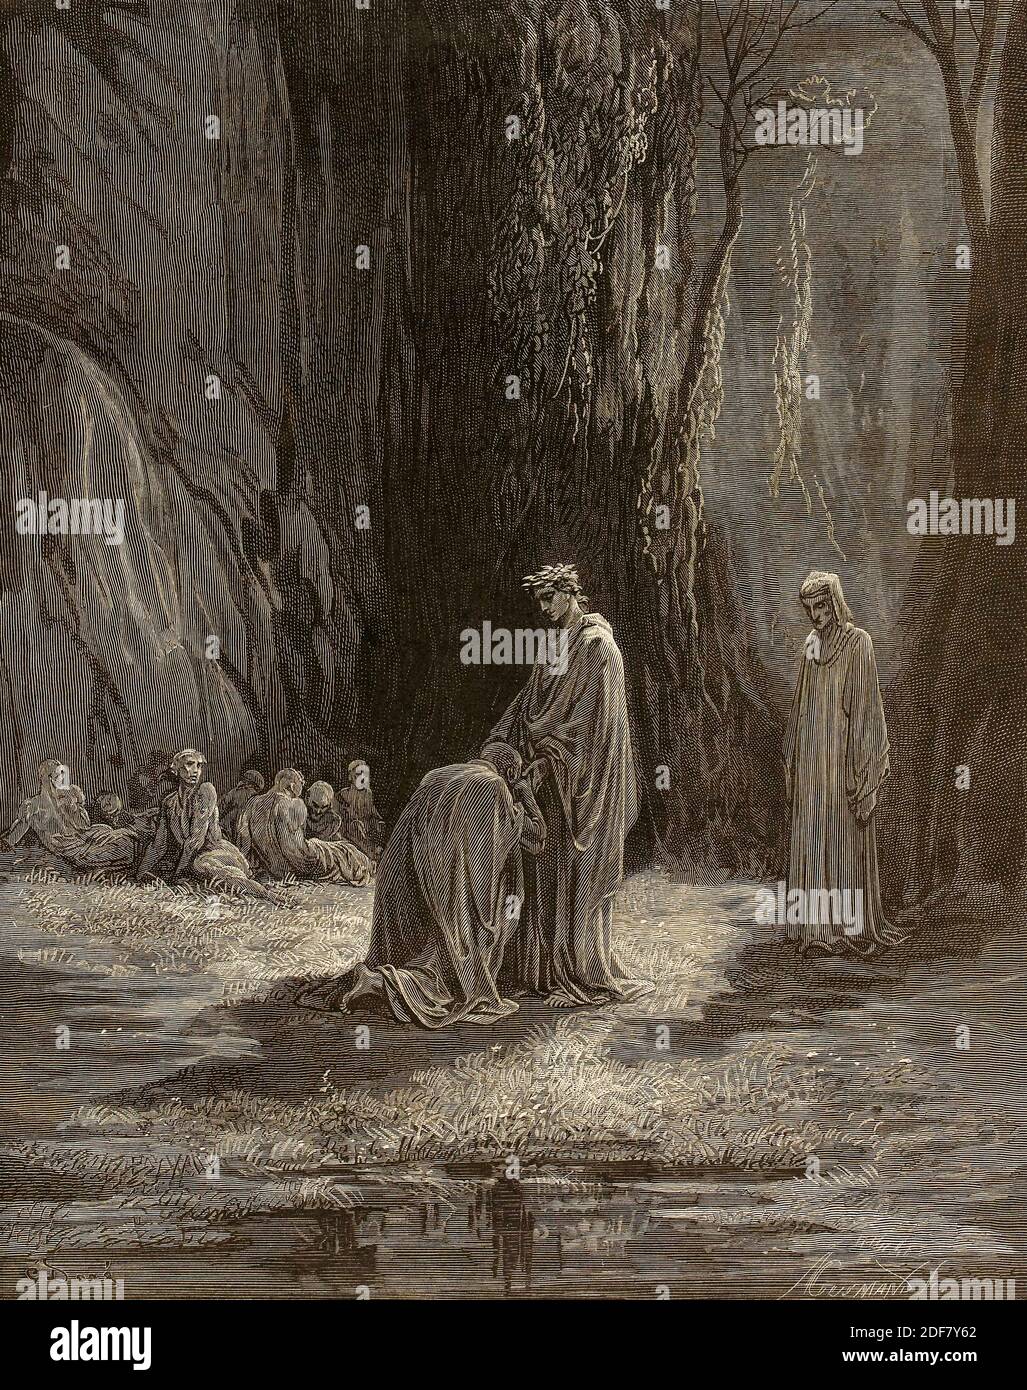 Dante - Divina Commedia - Purgatory - Illustration by Gustave Dorè - Canto VI - Sordello da Goito kneeling in front of Virgil Stock Photo